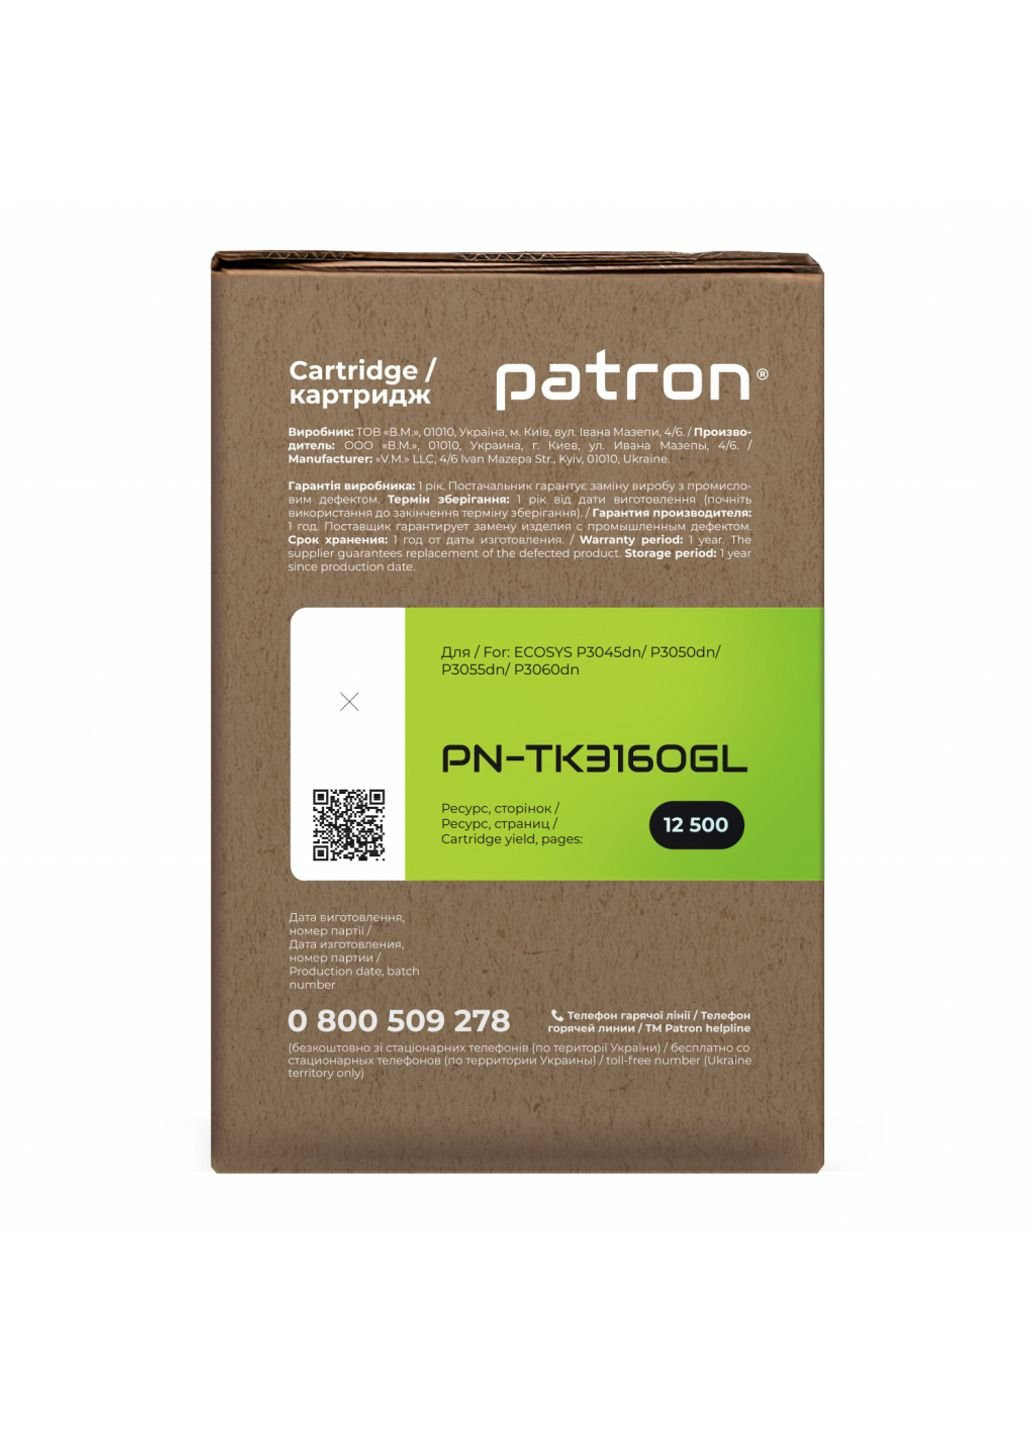 Тонер-картридж (PN-TK3160GL) Patron kyocera tk-3160 green label (247617224)